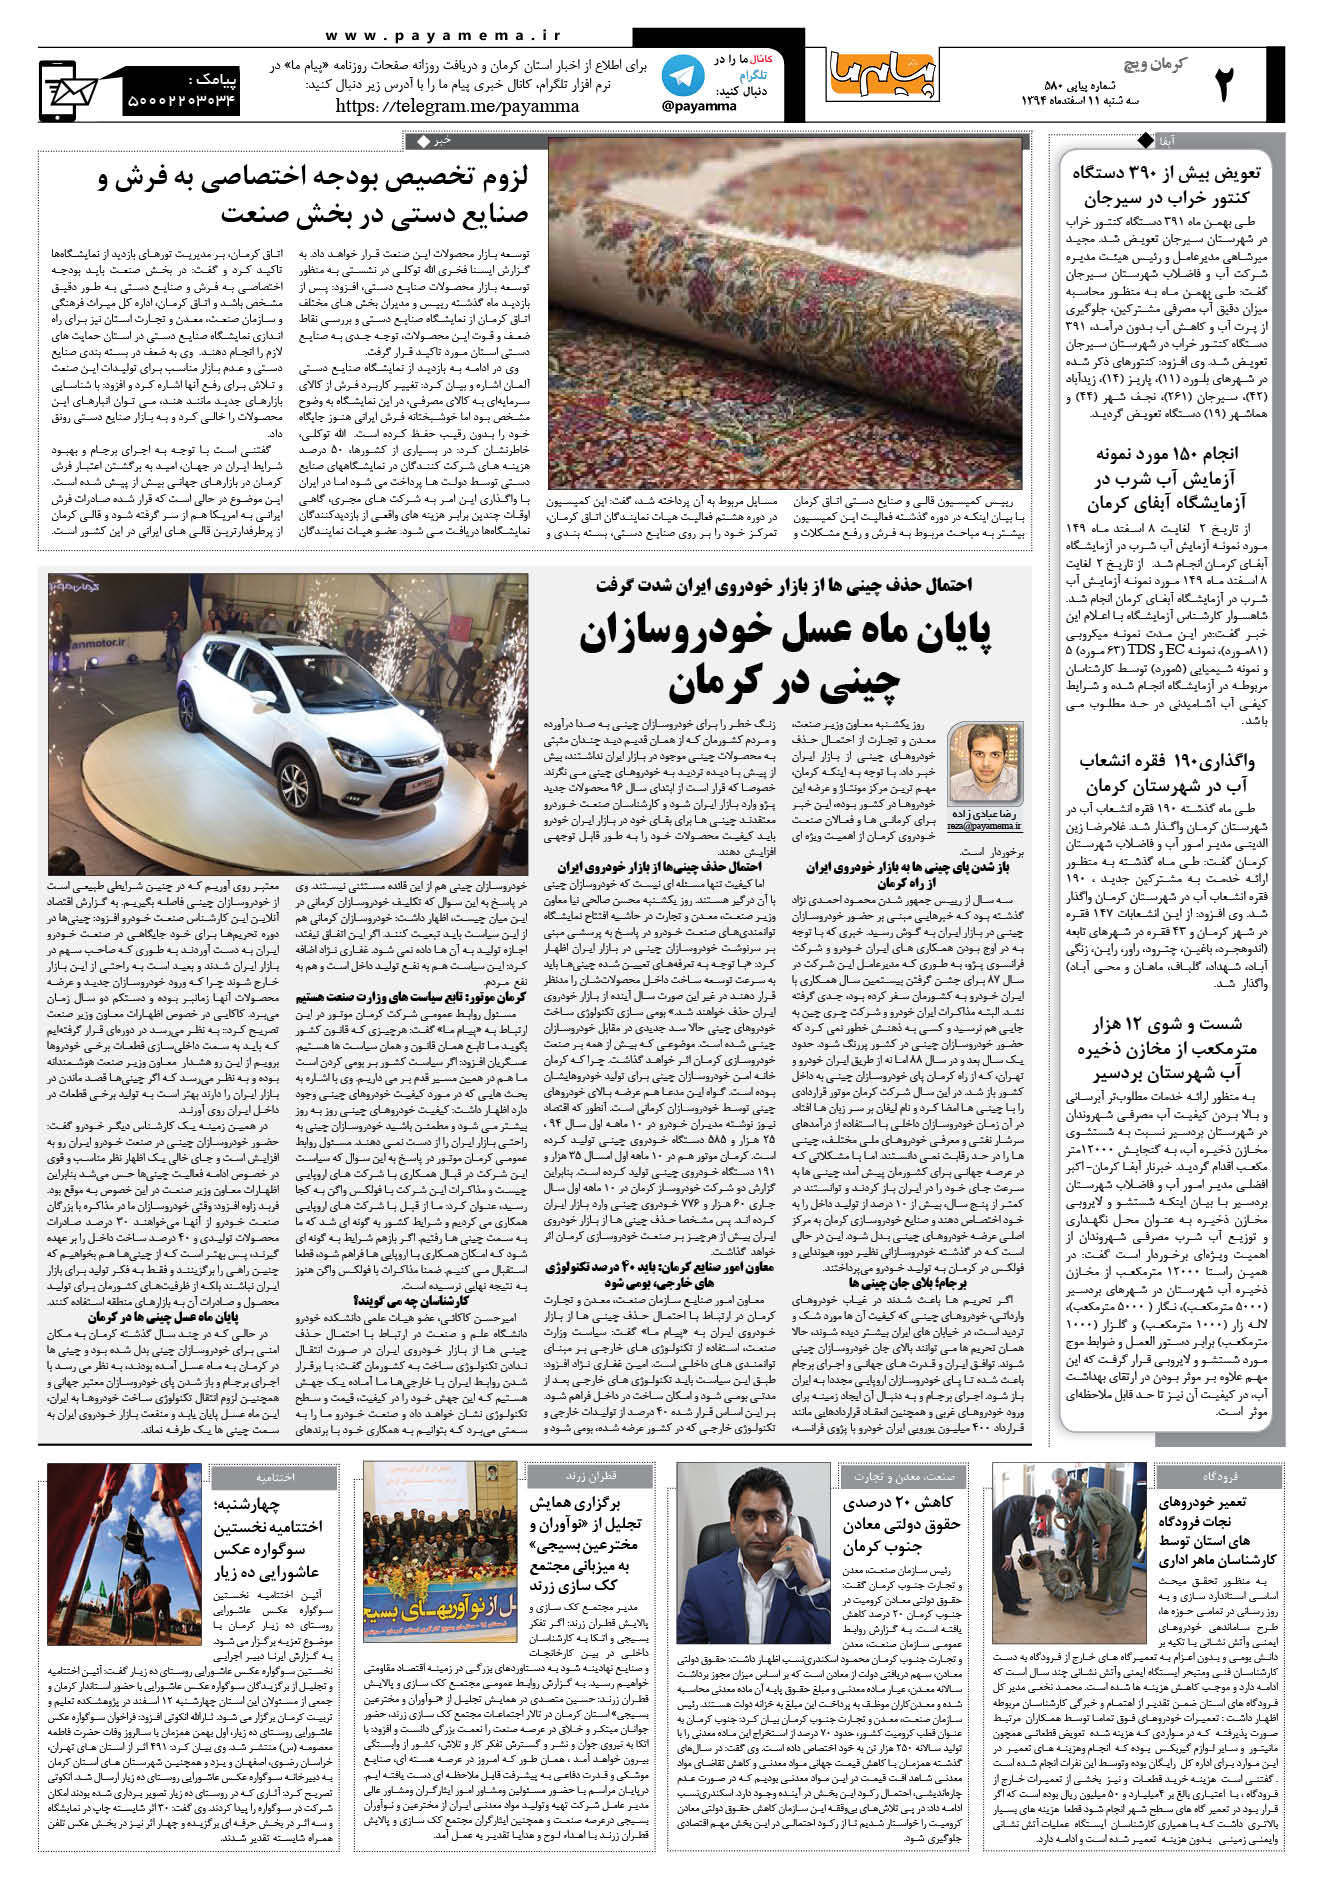 صفحه کرمان ویج شماره 580 روزنامه پیام ما